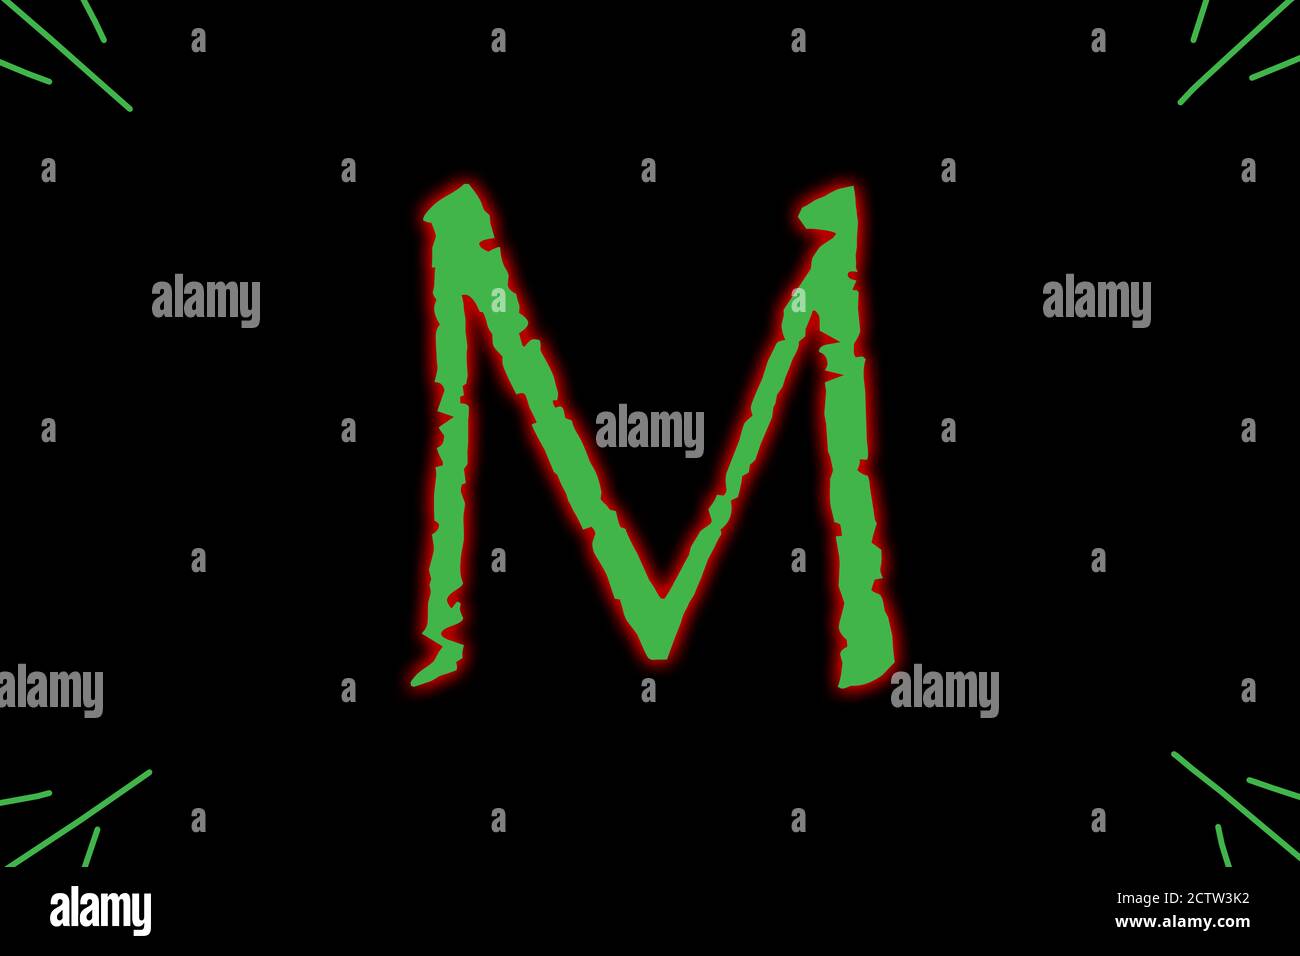 La lettre M est tapée avec une police de caractères génériques en vert avec une lueur externe rouge. Banque D'Images